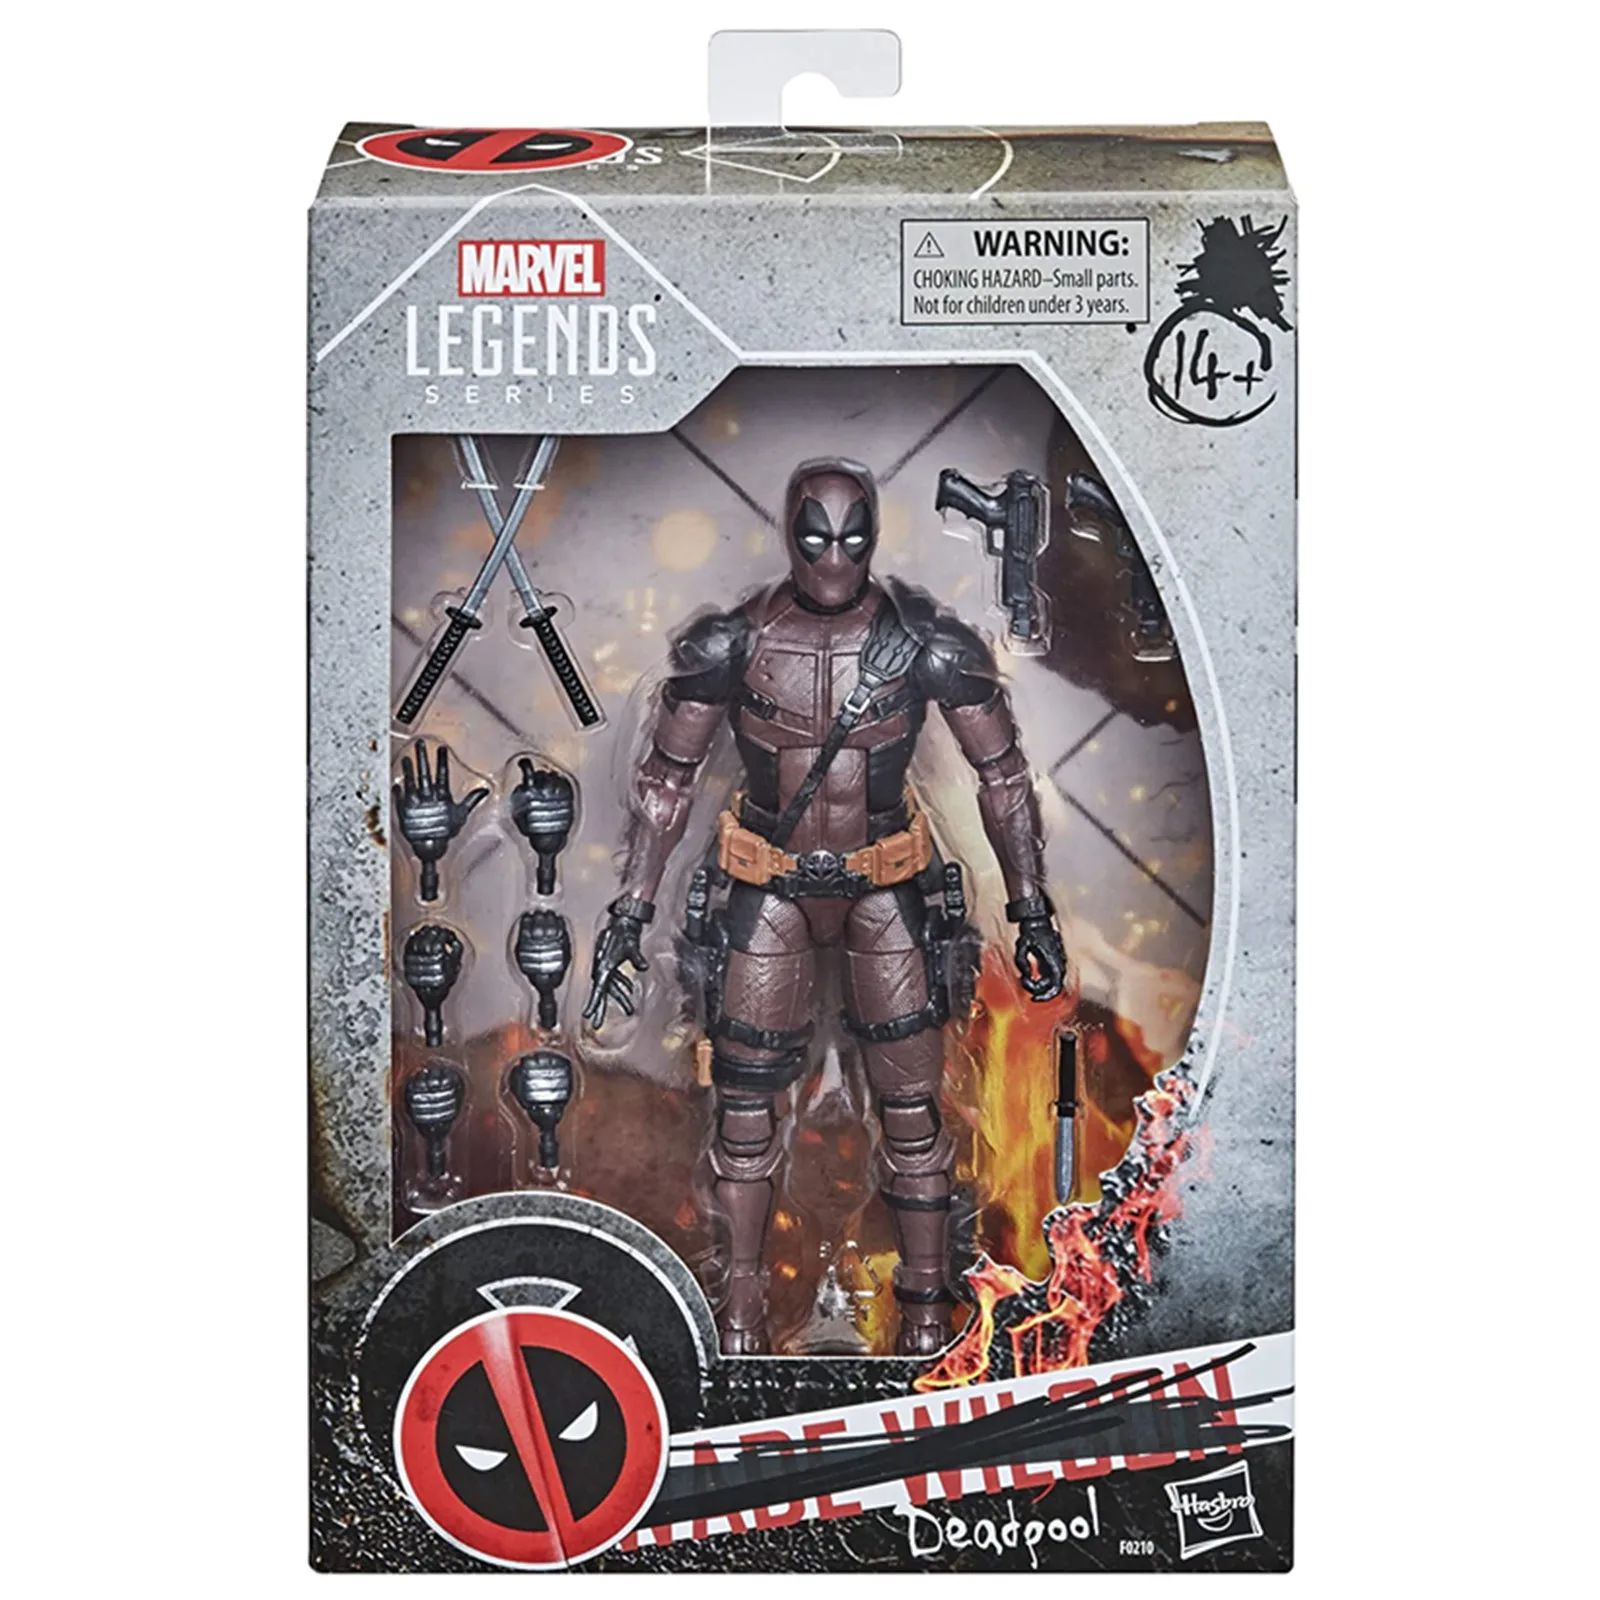 

Фигурка героя из мультфильма Marvel Legends Deadpool 2, оригинальная Коллекционная премиум-серия ML, Обугленная кукла, 6 дюймов, в коробке